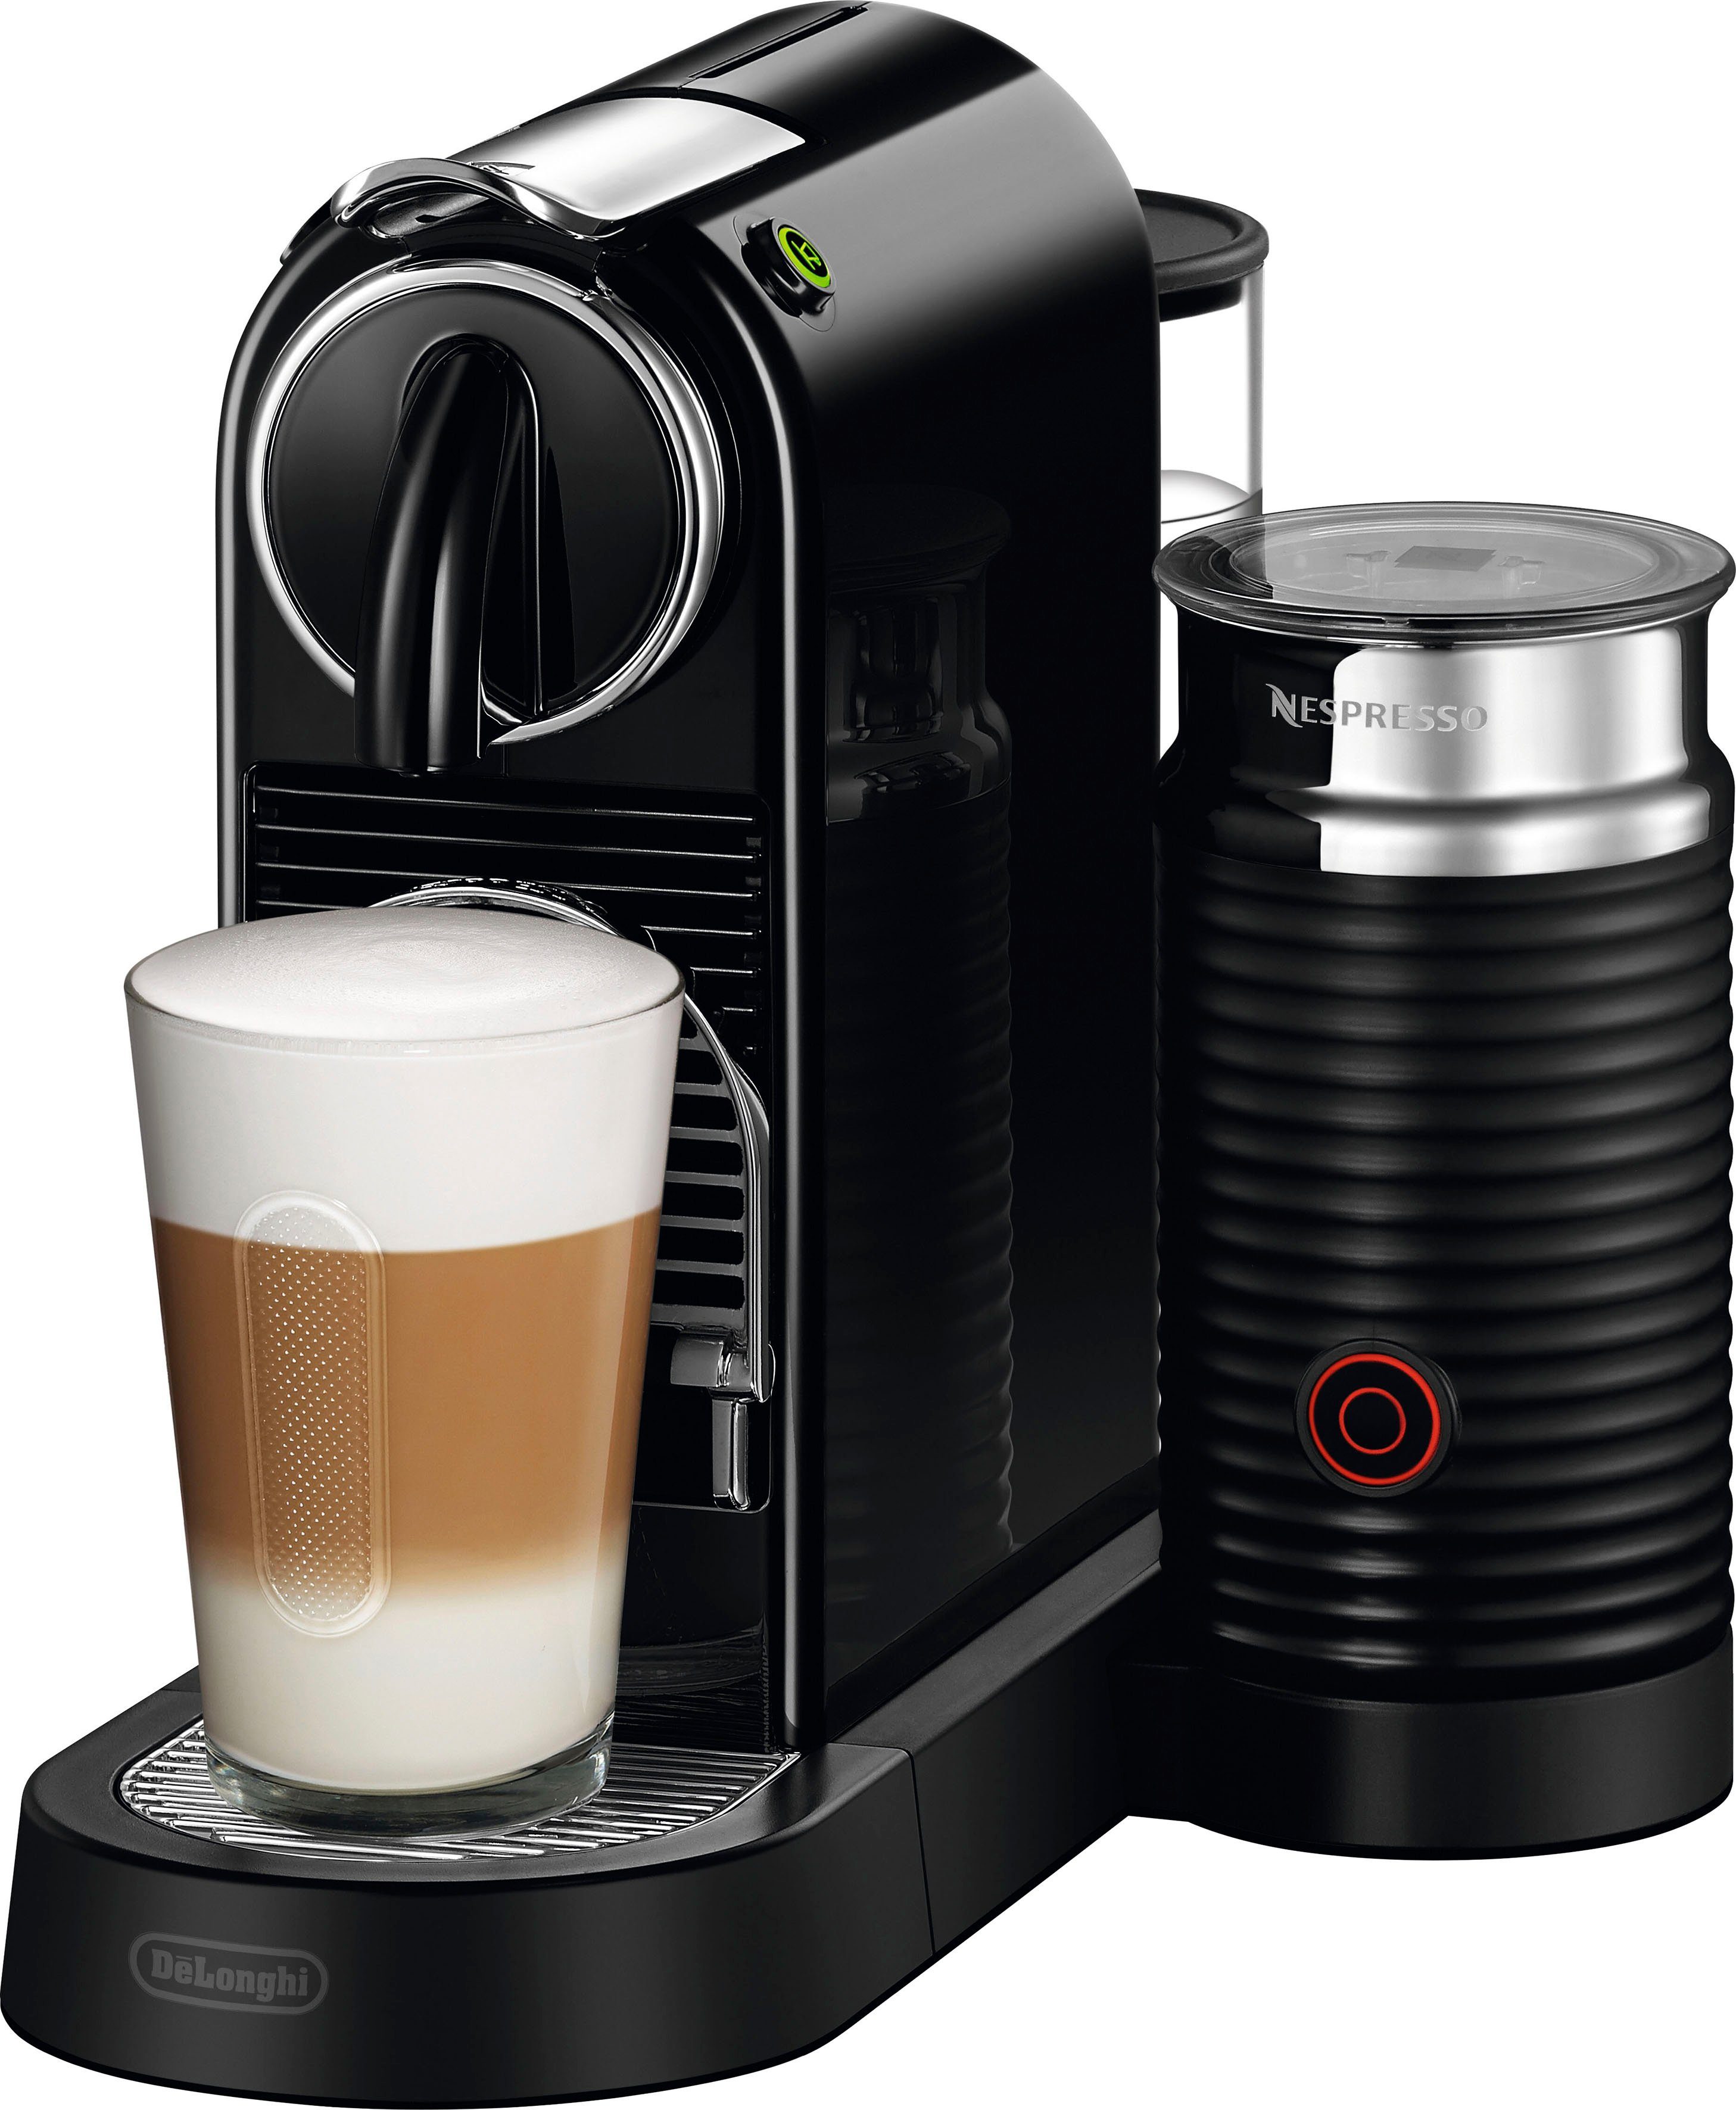 Nespresso Kapselmaschine CITIZ EN 267.BAE von DeLonghi, Schwarz, inkl. Aeroccino Milchaufschäumer, Willkommenspaket mit 14 Kapseln